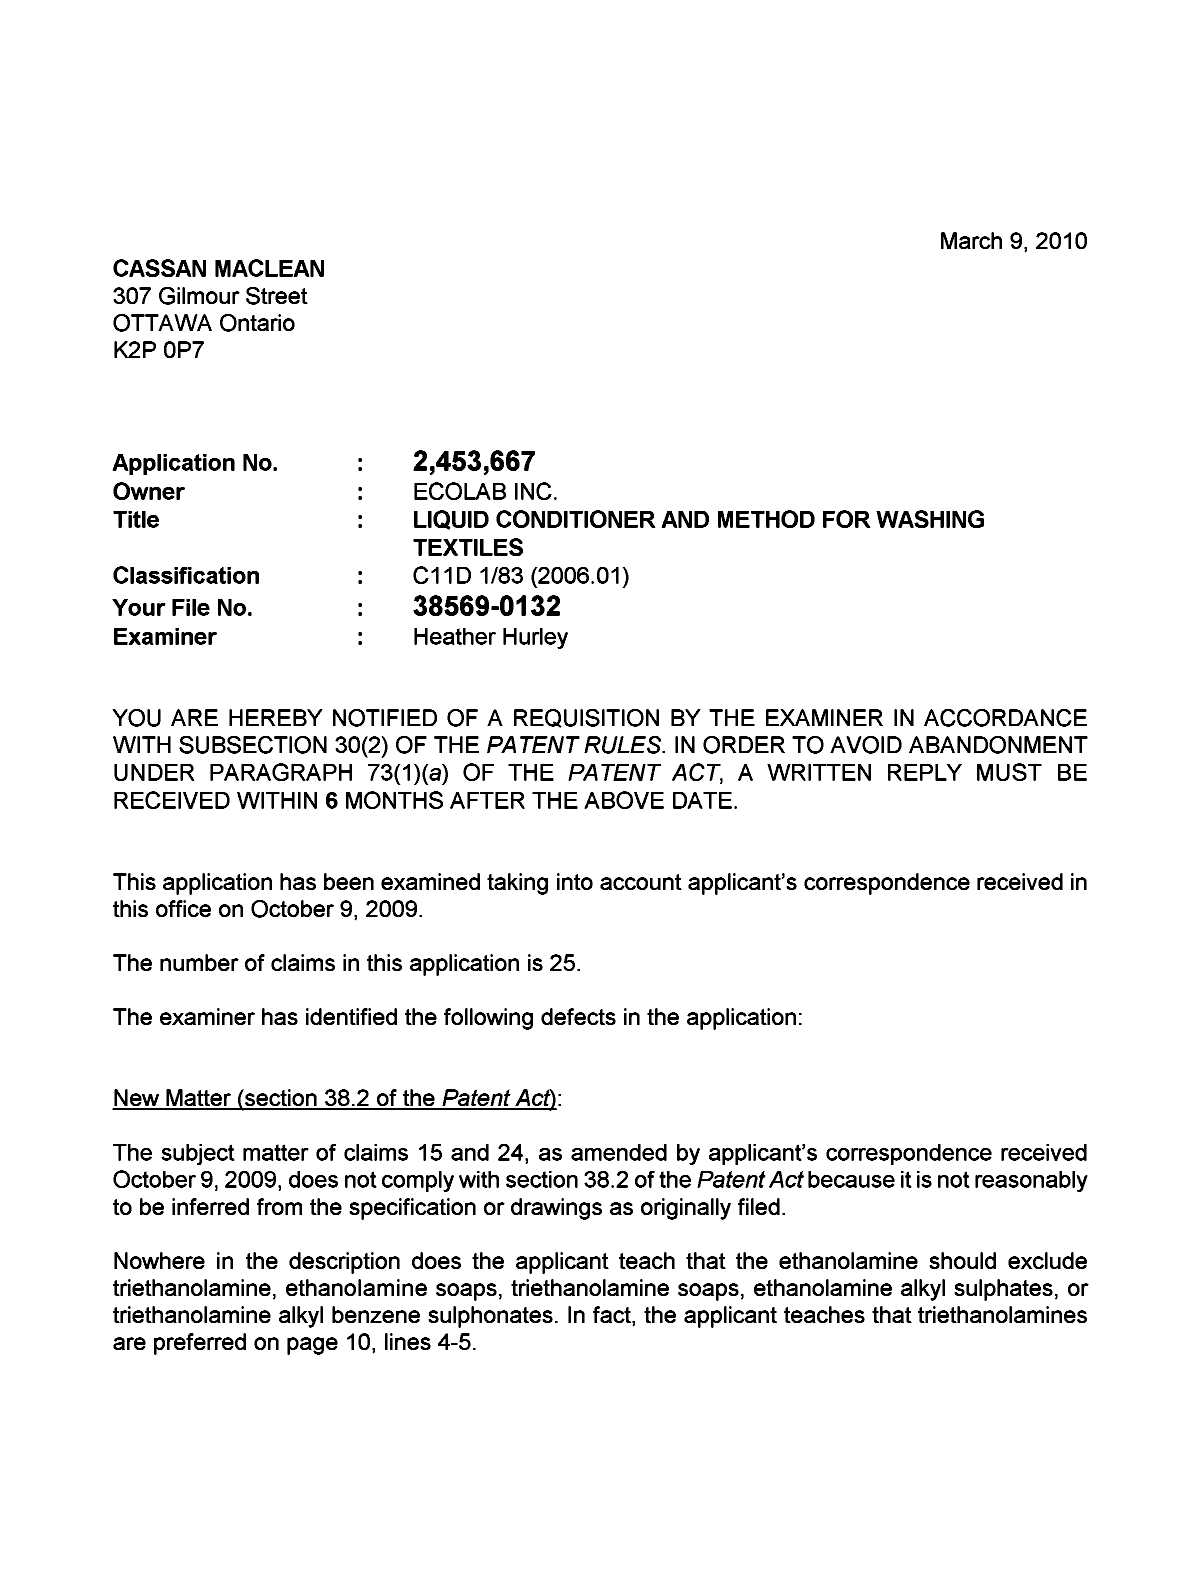 Document de brevet canadien 2453667. Poursuite-Amendment 20100309. Image 1 de 6